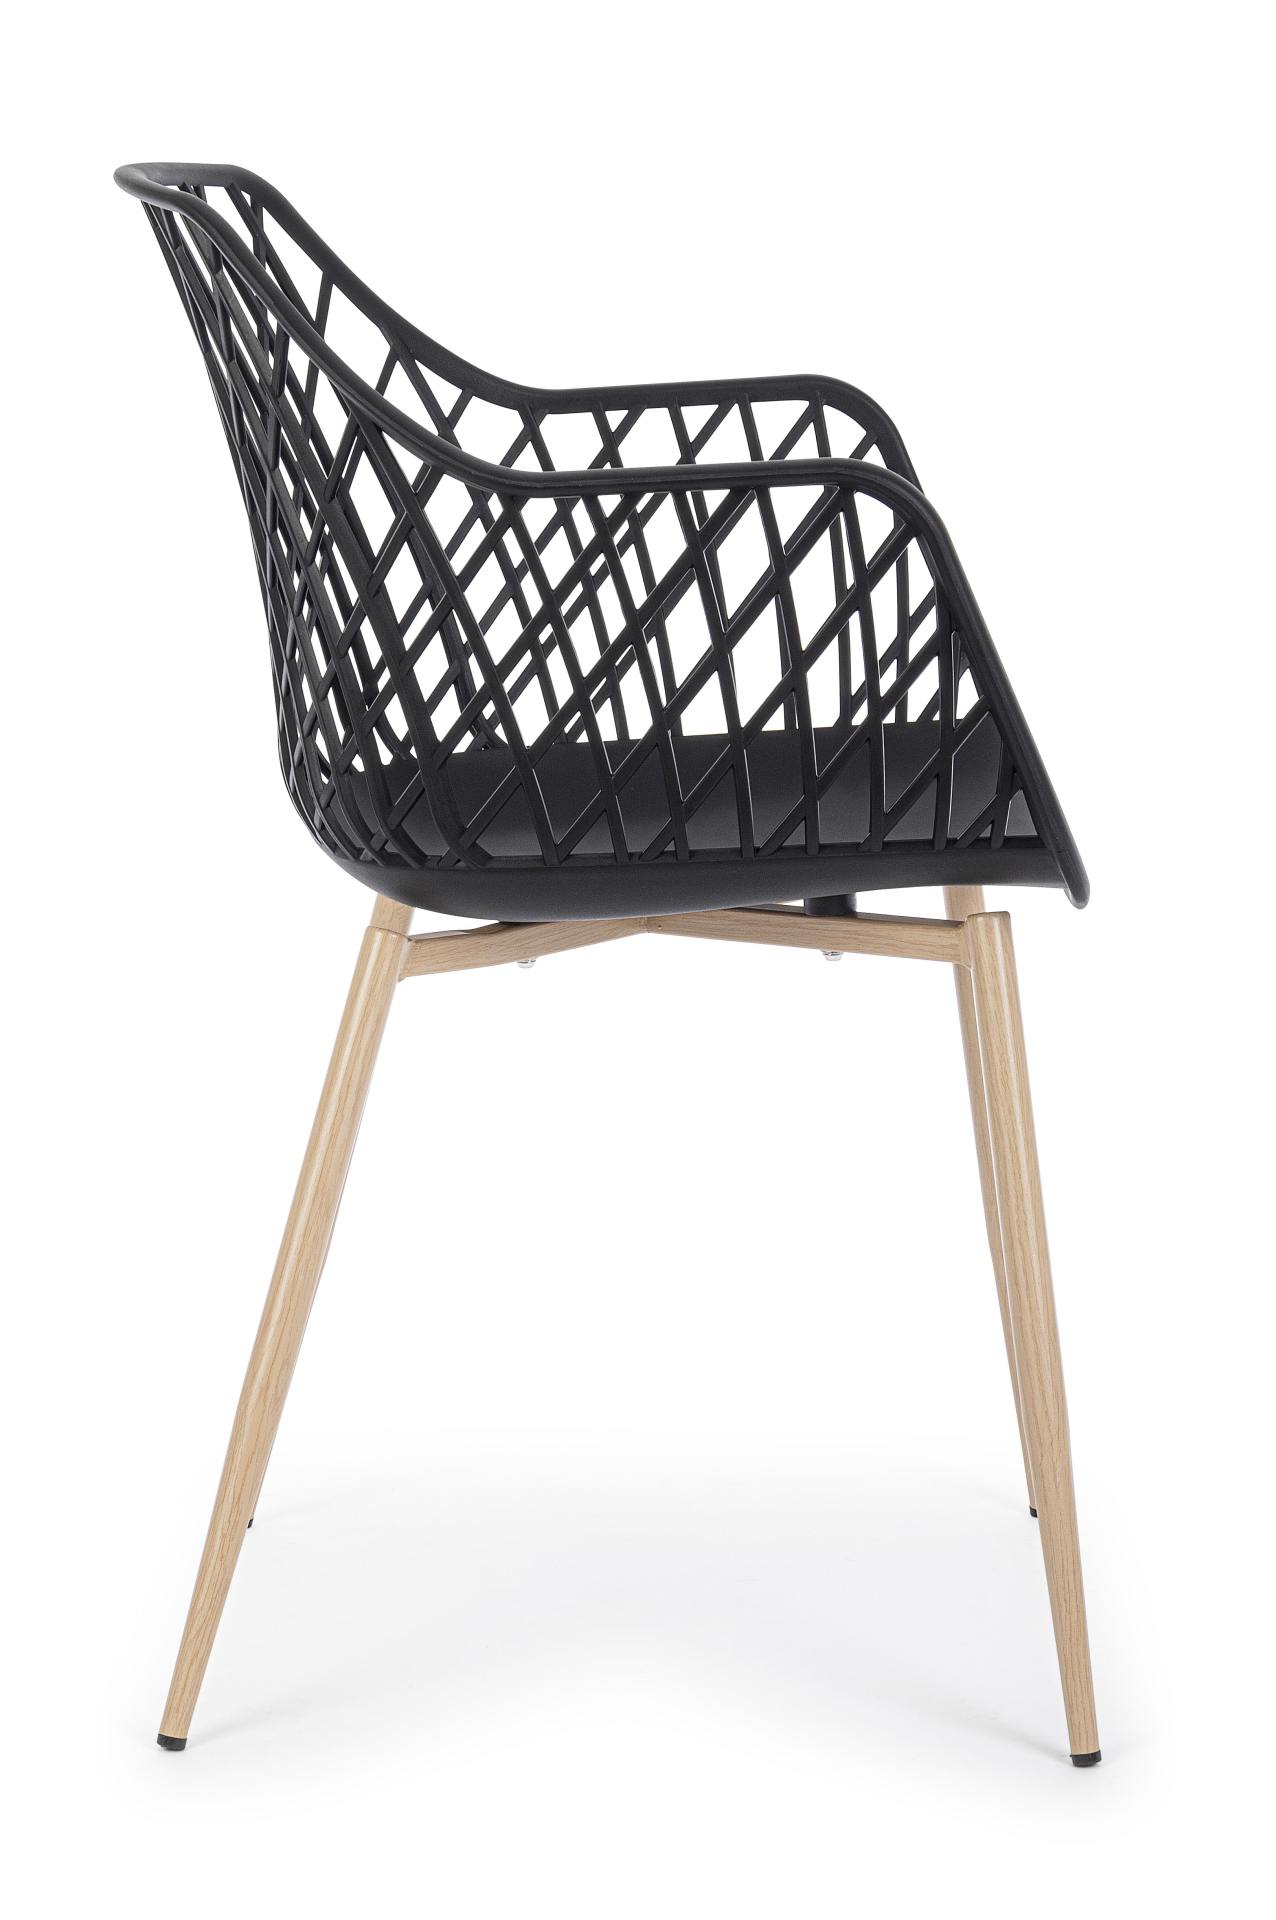 Der Stuhl Optik wurde aus Kunststoff gefertigt, welcher einen schwarzen Farbton besitzt. Das Gestell ist aus Metall und hat eine Holz-Optik. Das Design des Stuhls ist modern gehalten. Die Sitzhöhe beträgt 44 cm.